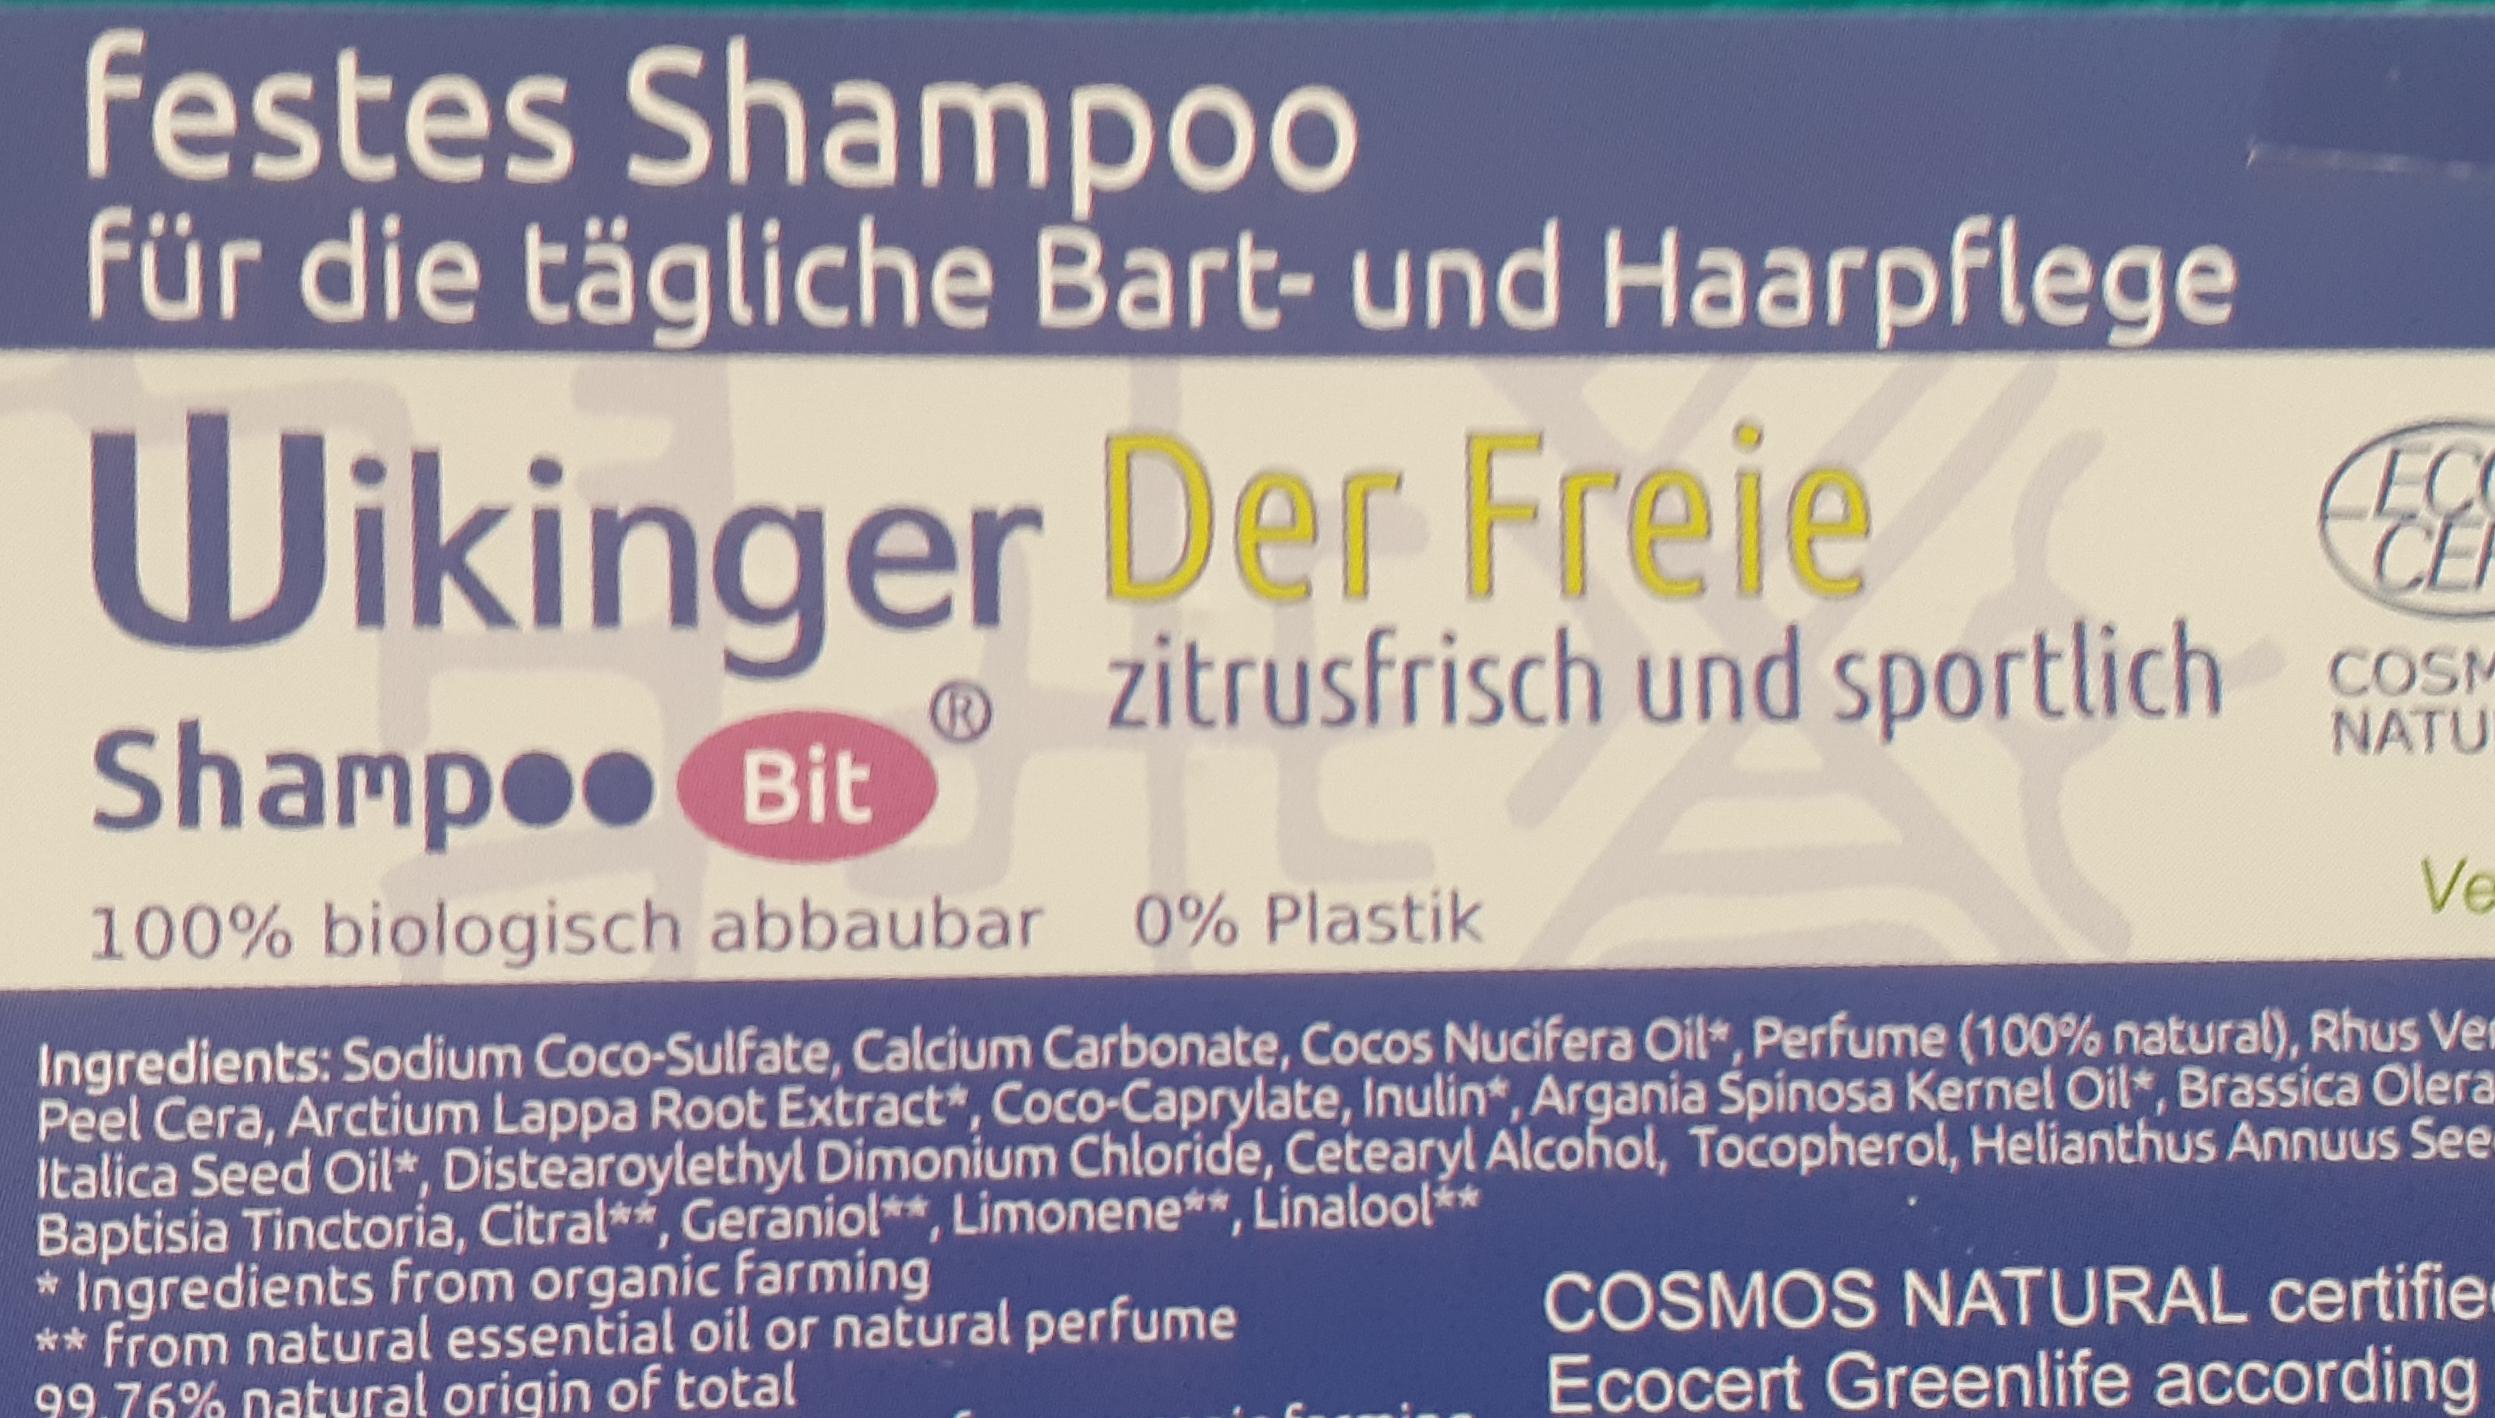 Wikinger Shampoo Bit von Rosenrot für die tägliche Bart- und Haarpflege, Der Freie